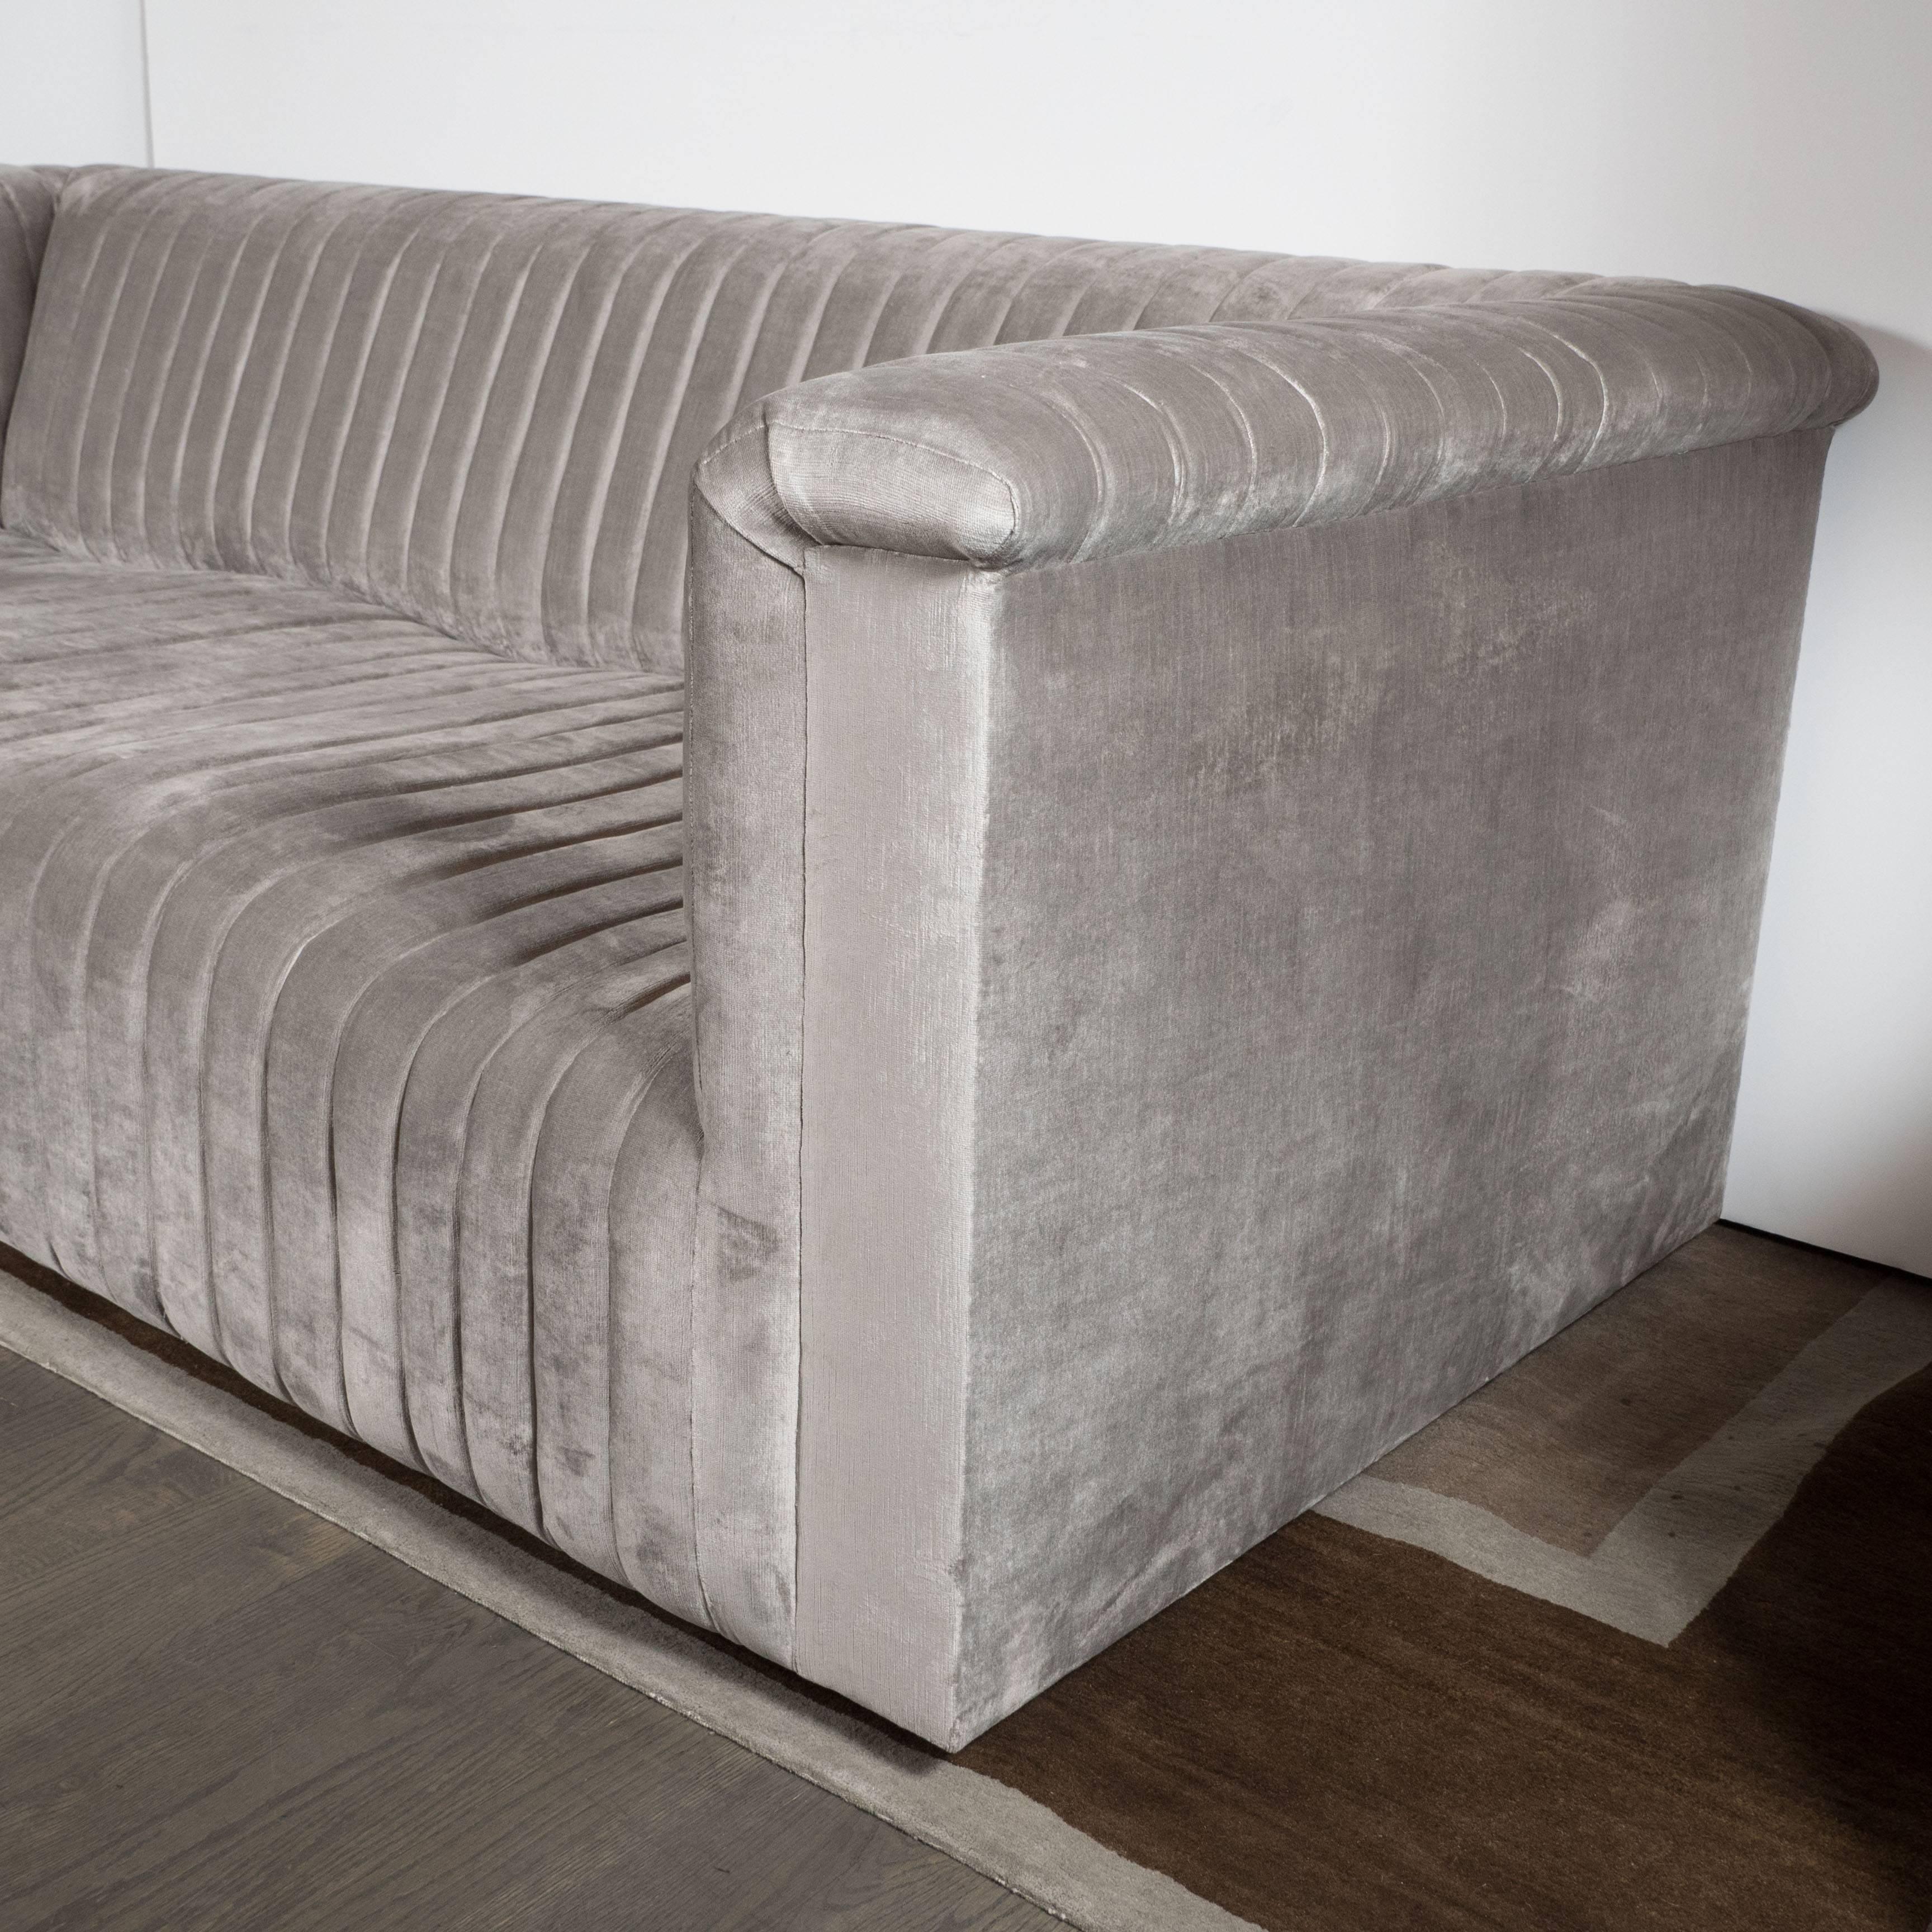 Ein maßgefertigtes modernistisches Kanaldesign-Sofa mit Platin-Samt-Bezug. Vertikale Streifen bilden ein wellenförmiges Muster auf dem Sitz. Das Kanaldesign setzt sich an den Armlehnen und der Rückenlehne des Sofas fort. Er wurde vollständig mit